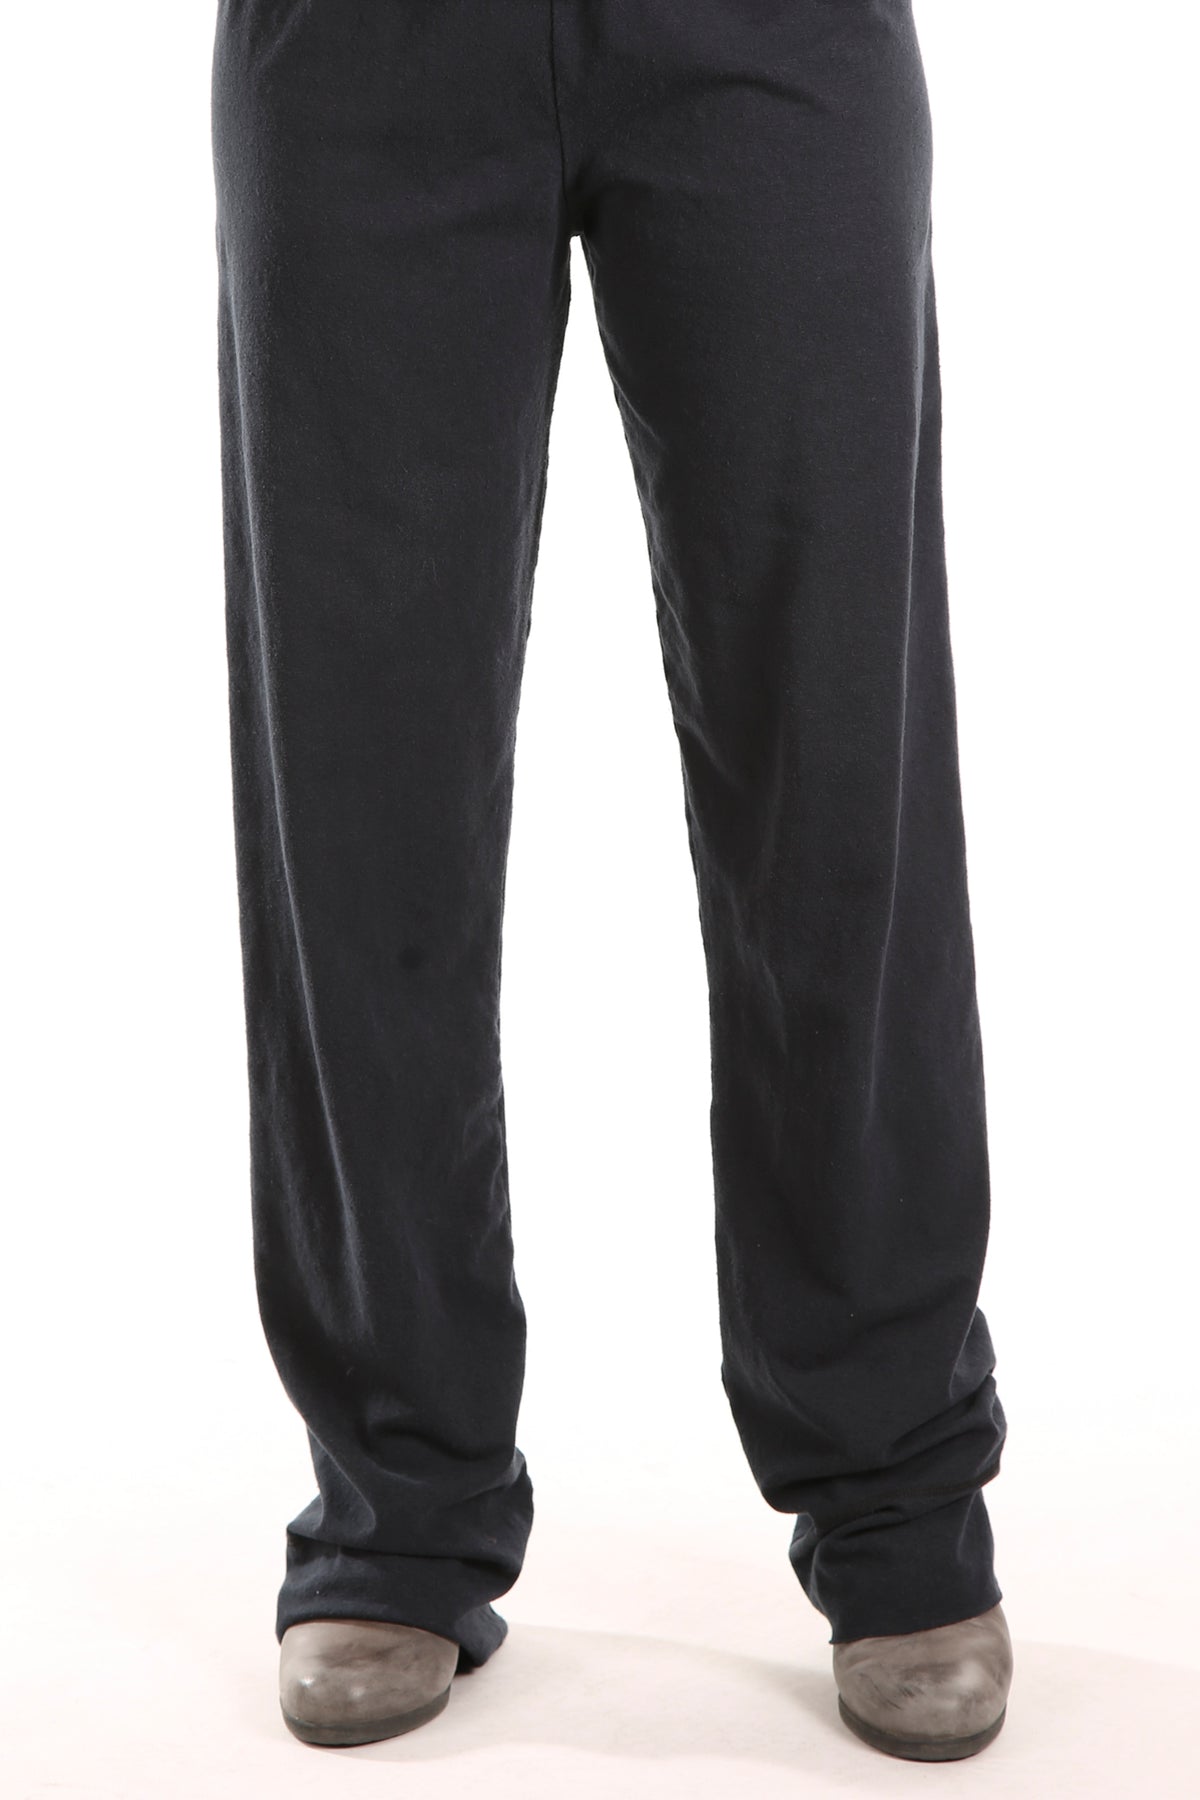 3176 Comfy Cotton-Lycra Slim Pant-black- Unprinted